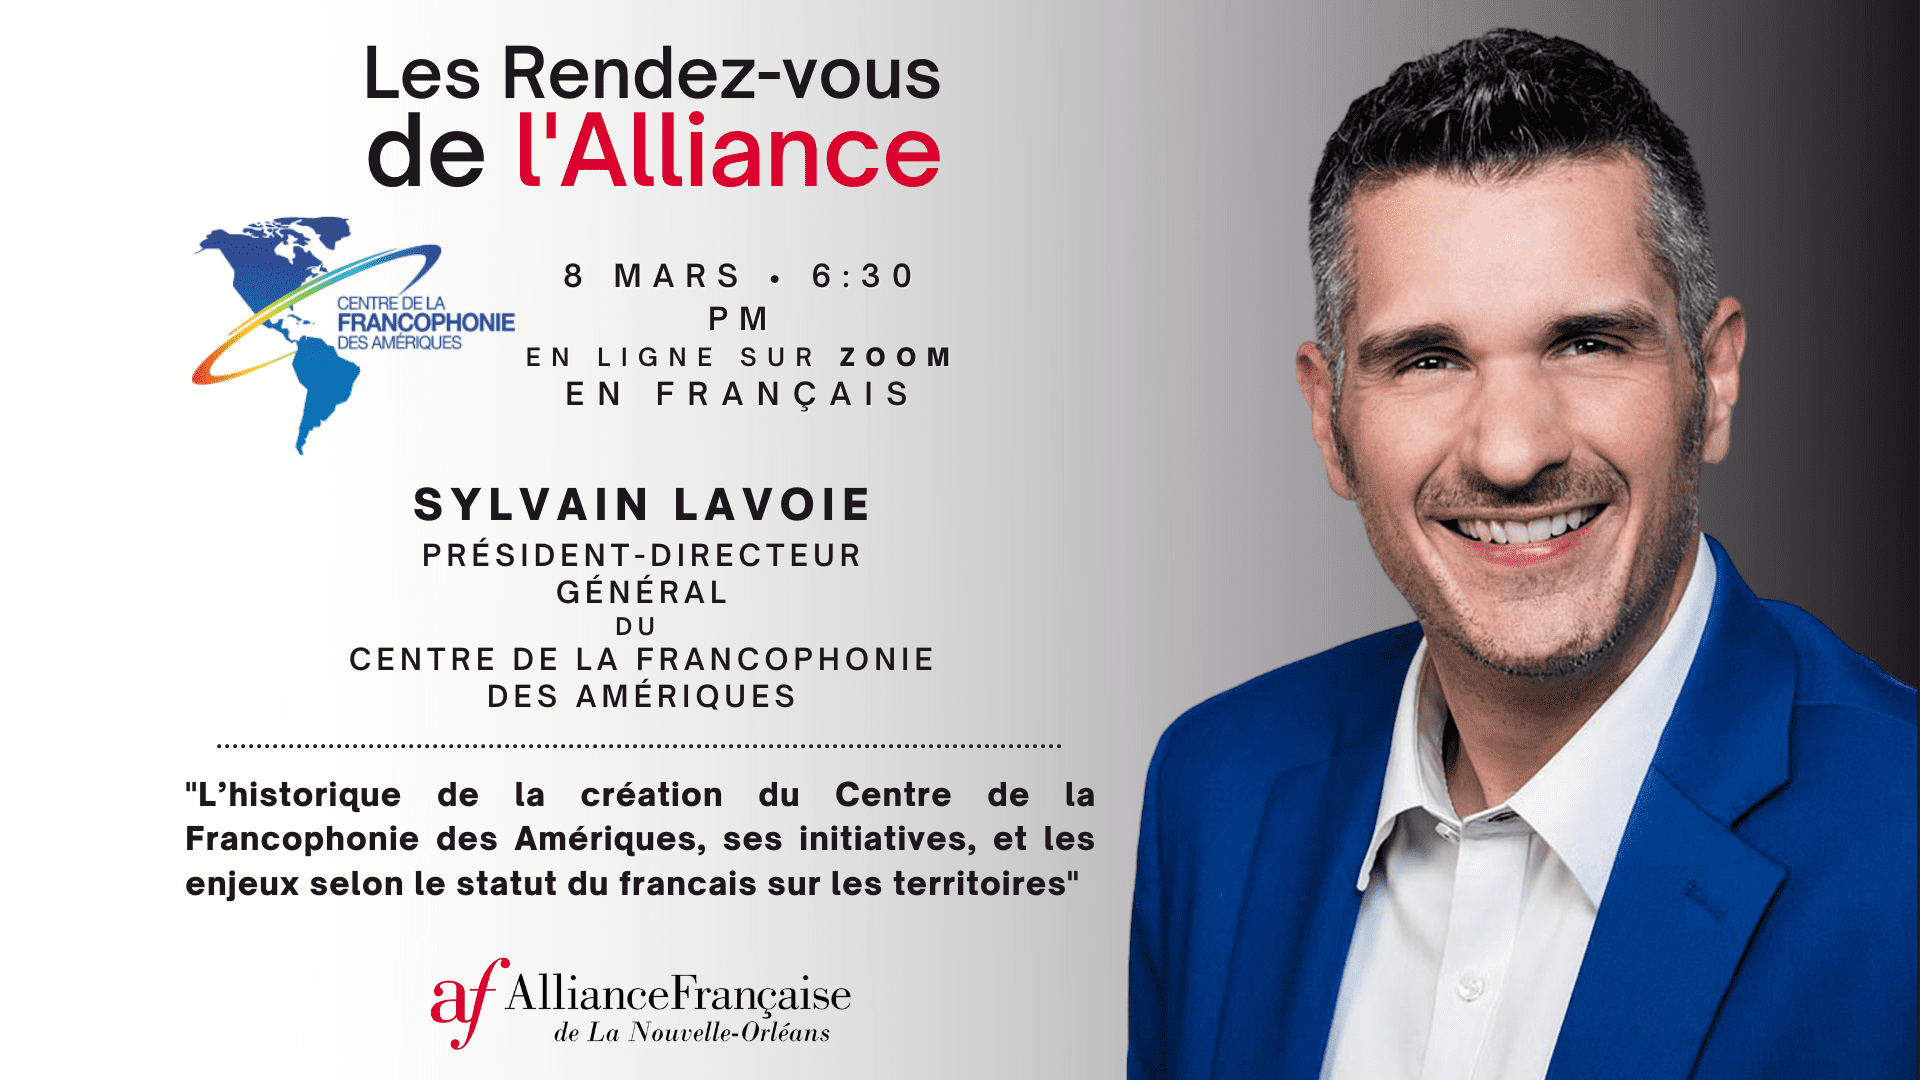 Rendez-vous de l'Alliance - Sylvain Lavoie du Centre de la Francophonie des Amériques